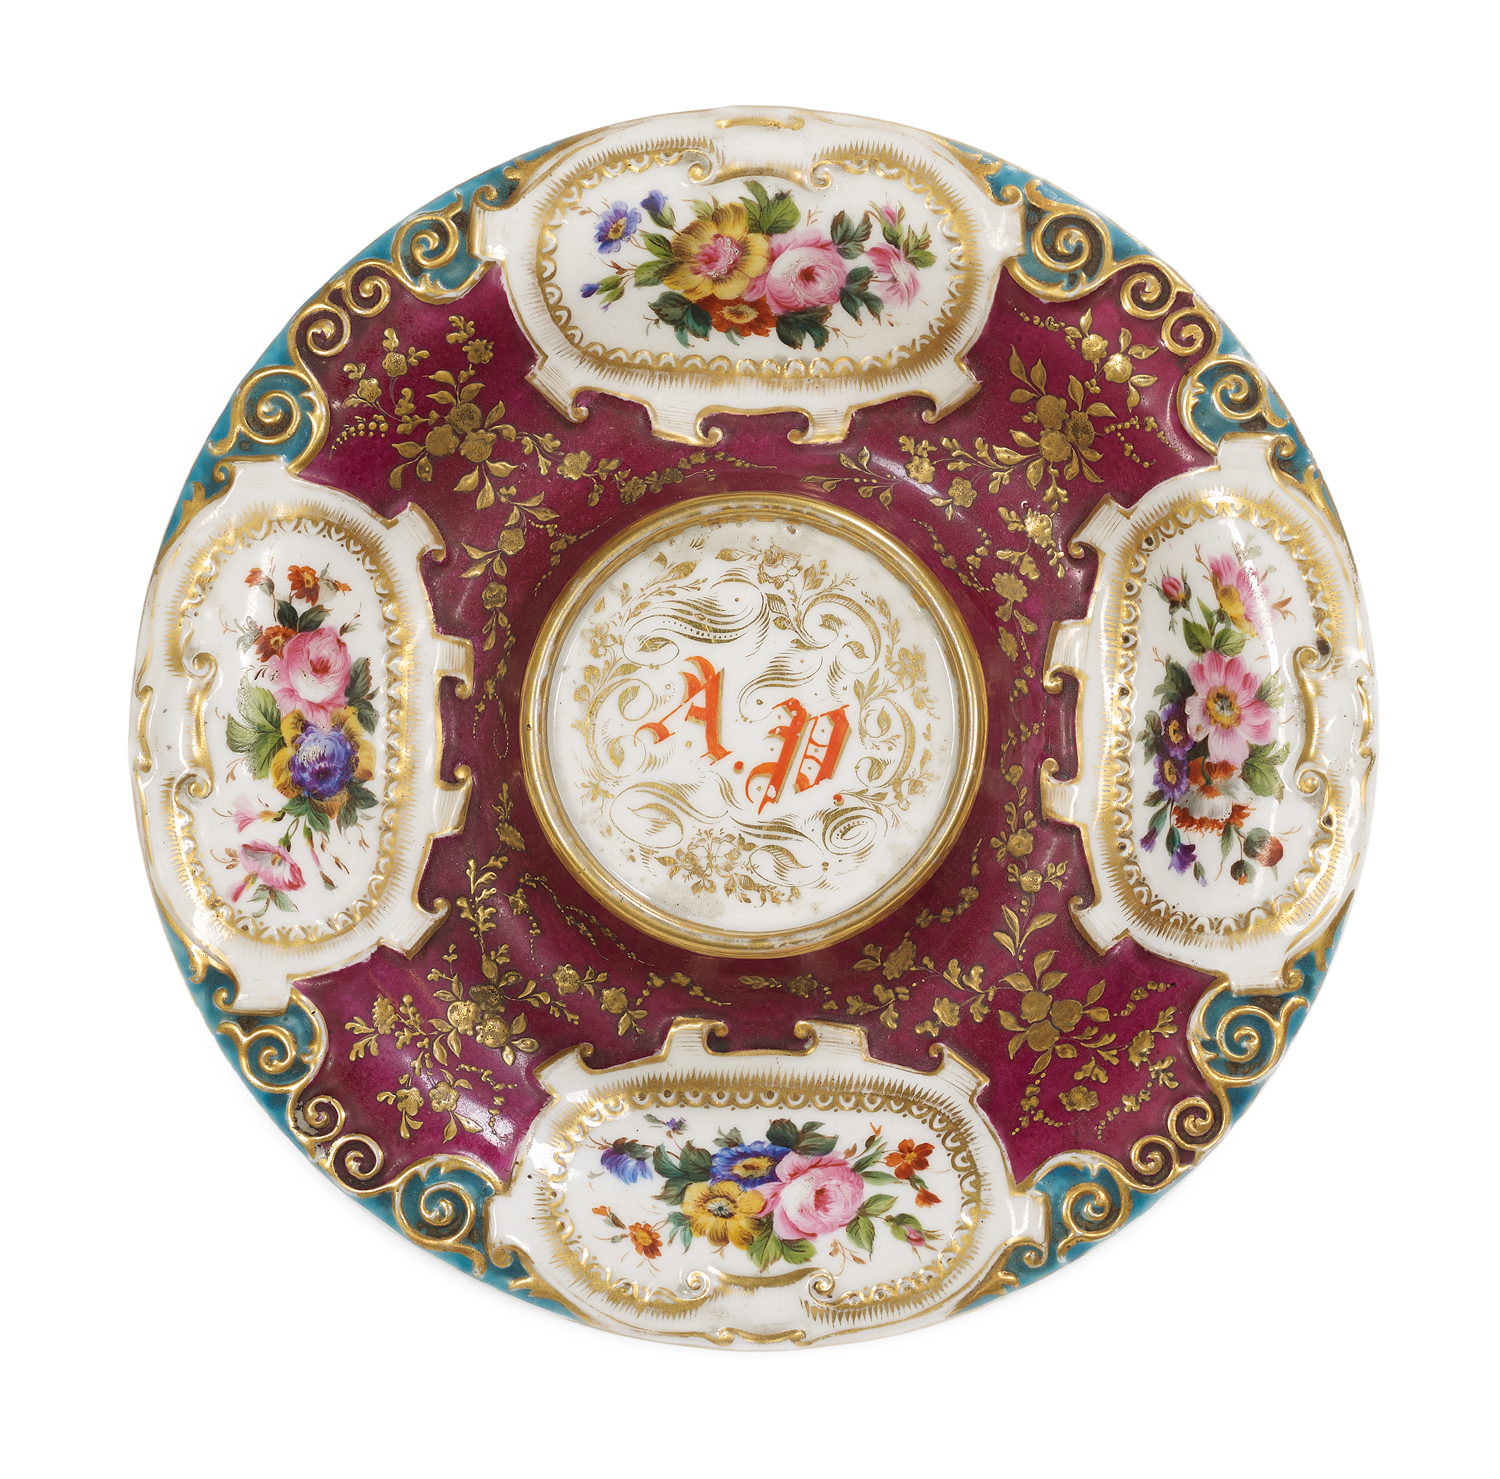 Six Pieces of Jacob Petit Paris Porcelain - Image 2 of 3